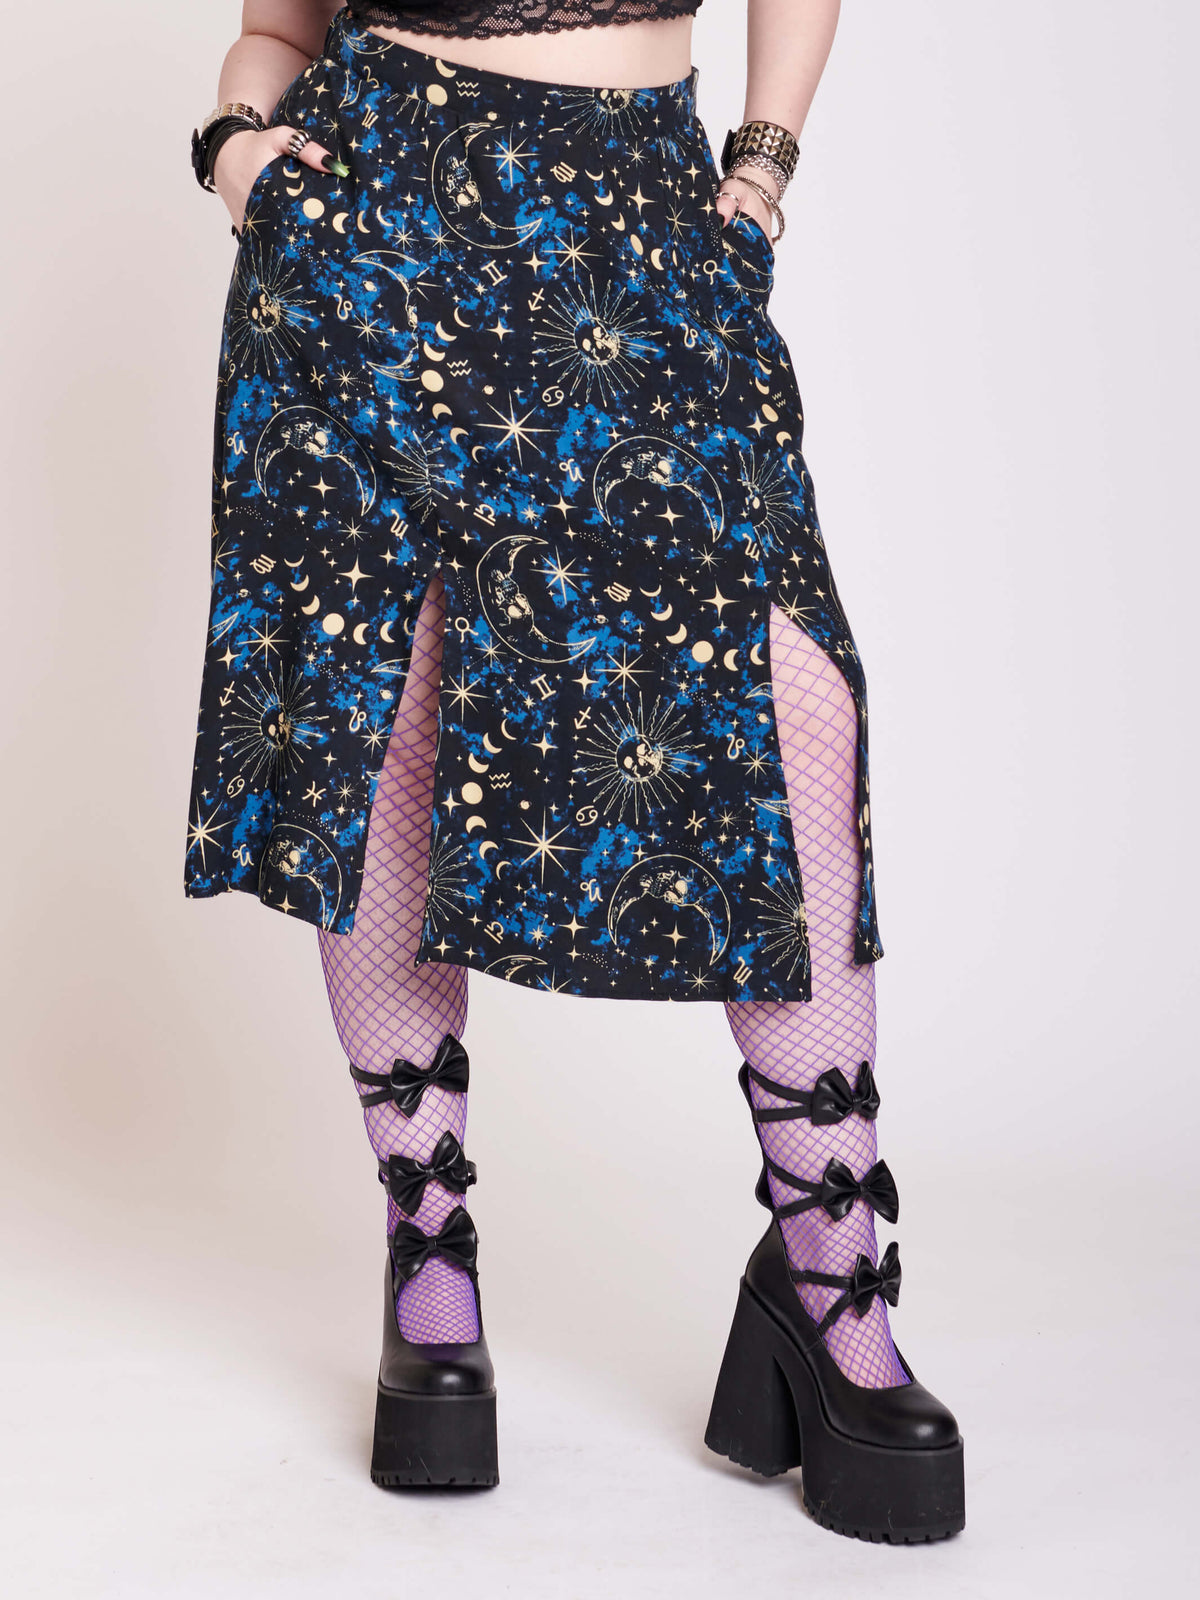 split midi skirt with blue, black and white celestail print